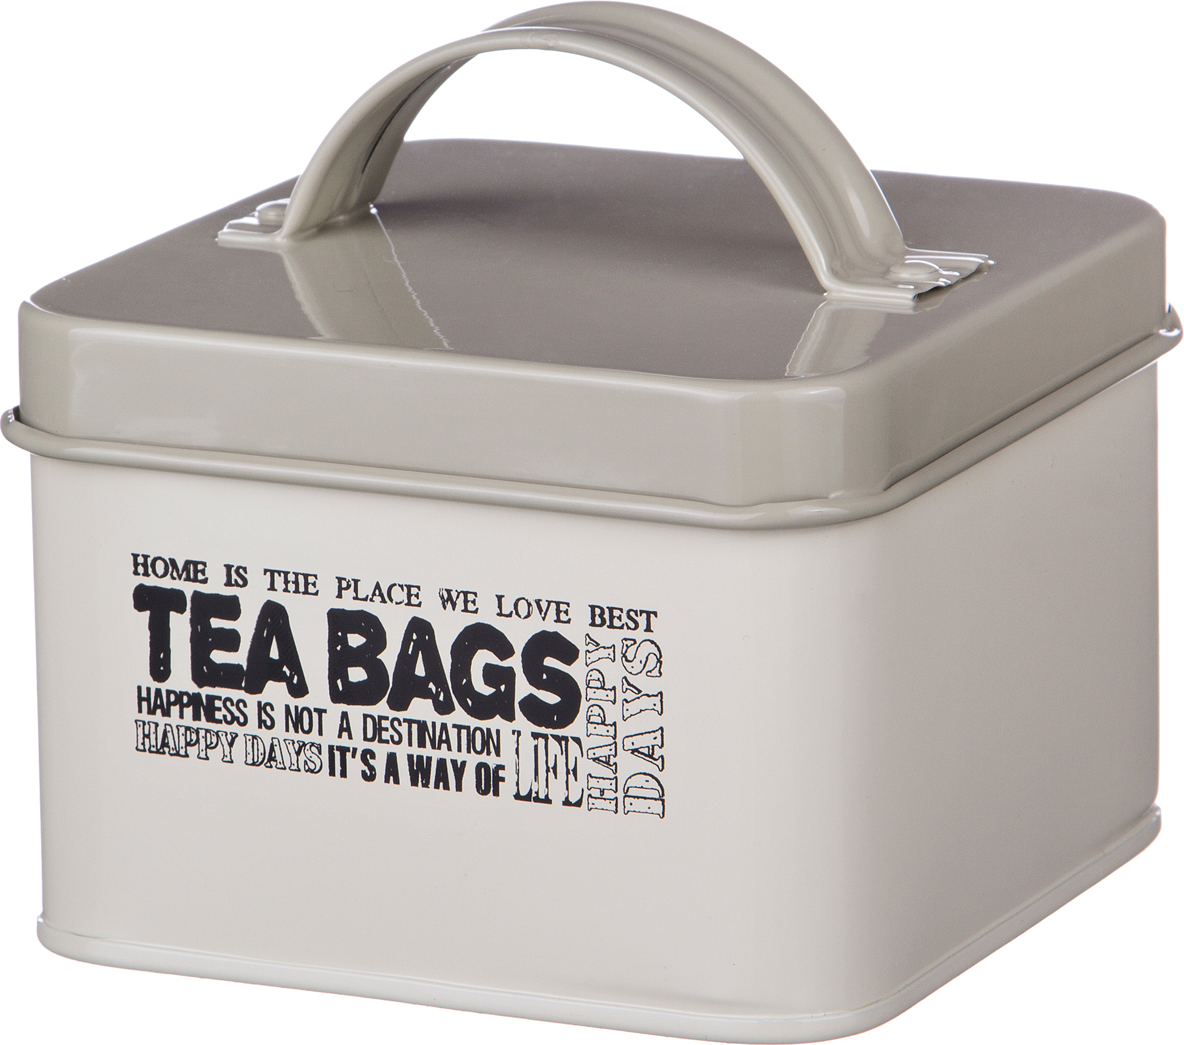 Банка для чайных пакетиков Be happy Tea Bags, 13x13 см, 7 см, Нерж. сталь, Agness, Германия